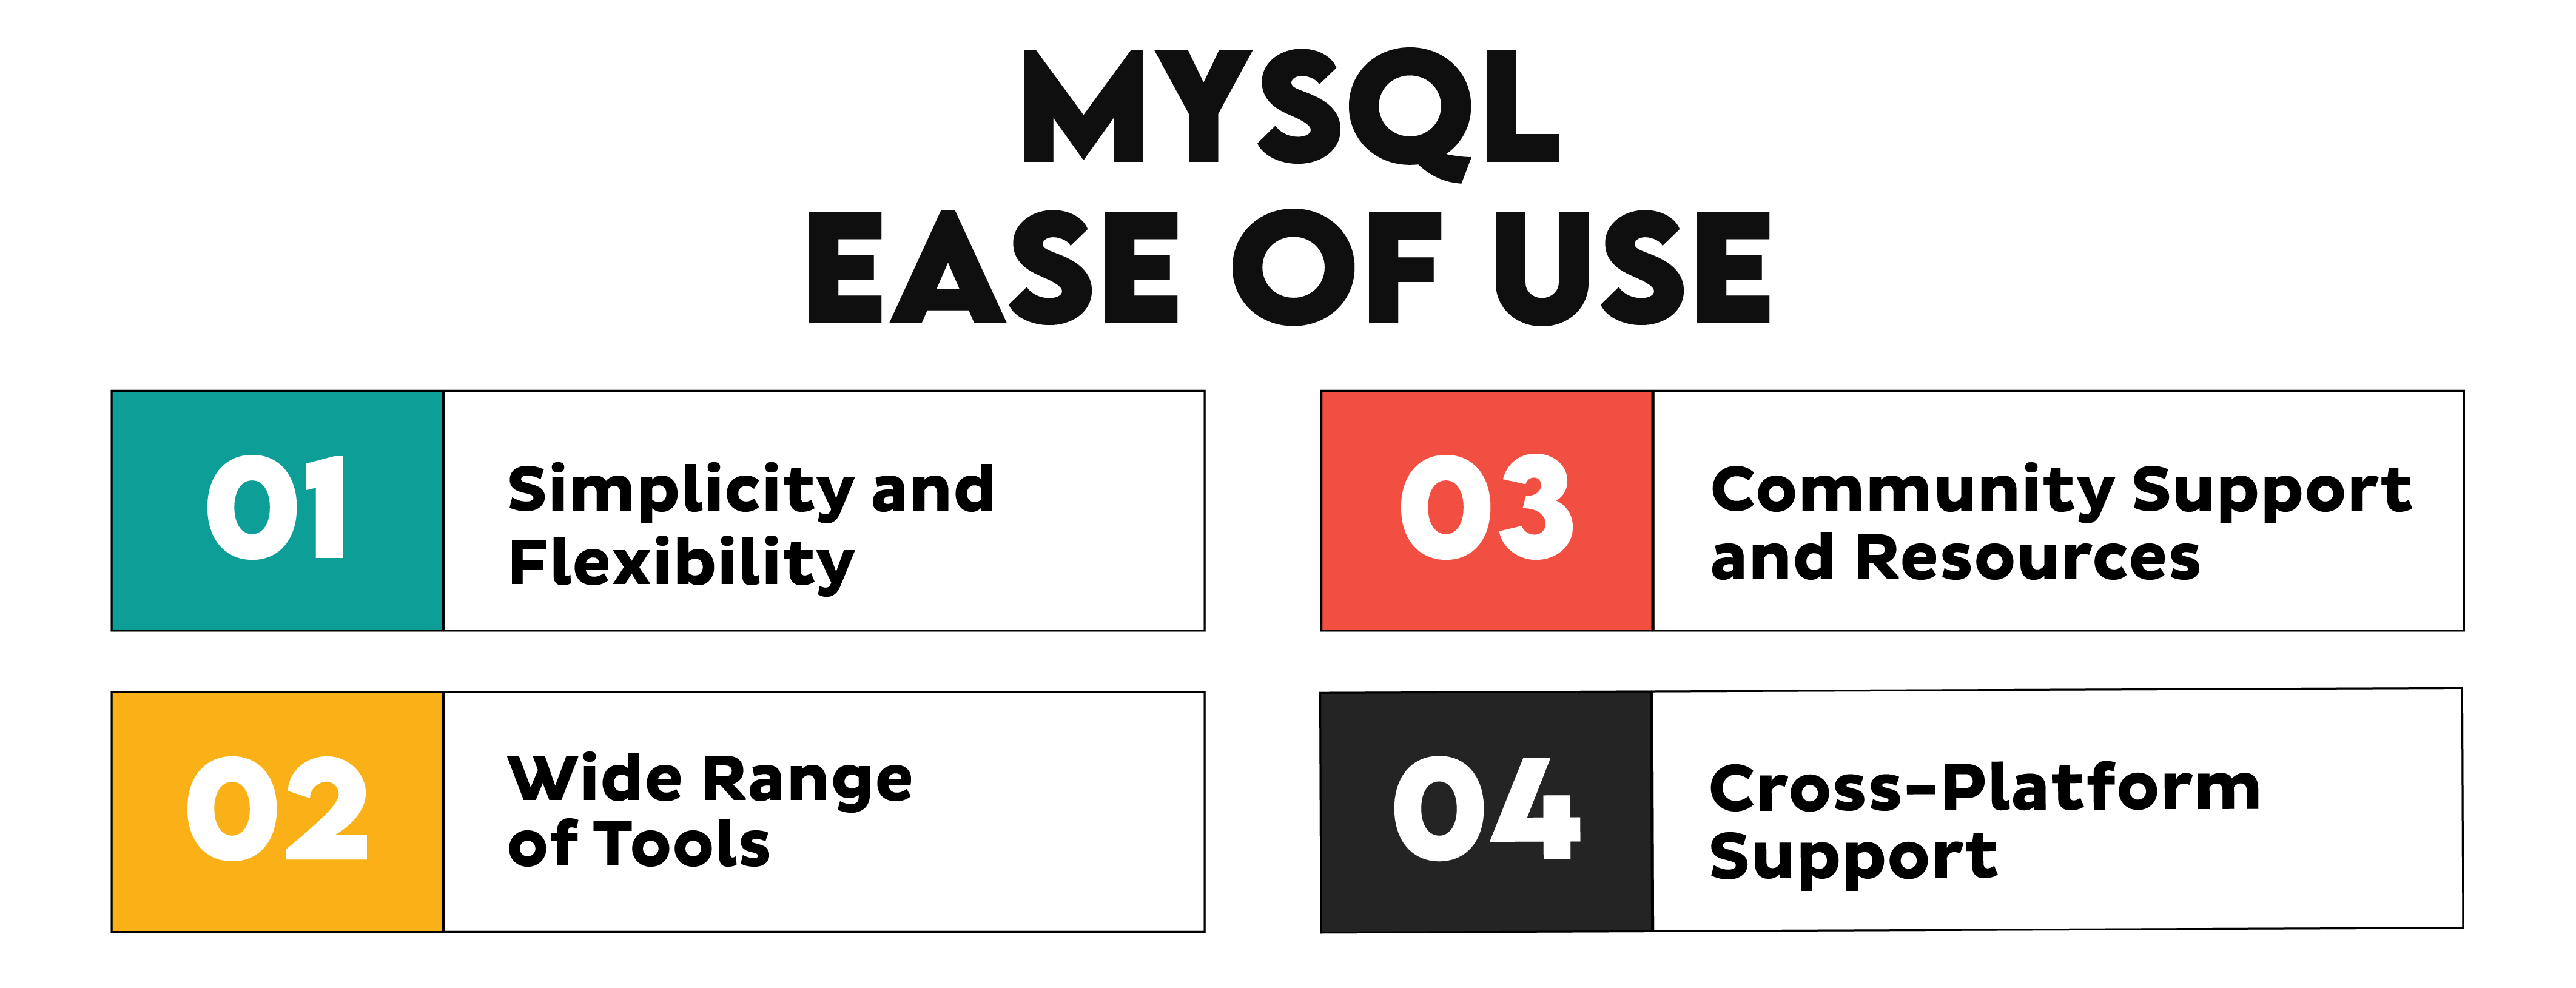 MySQL vs MS SQL Ease of Use